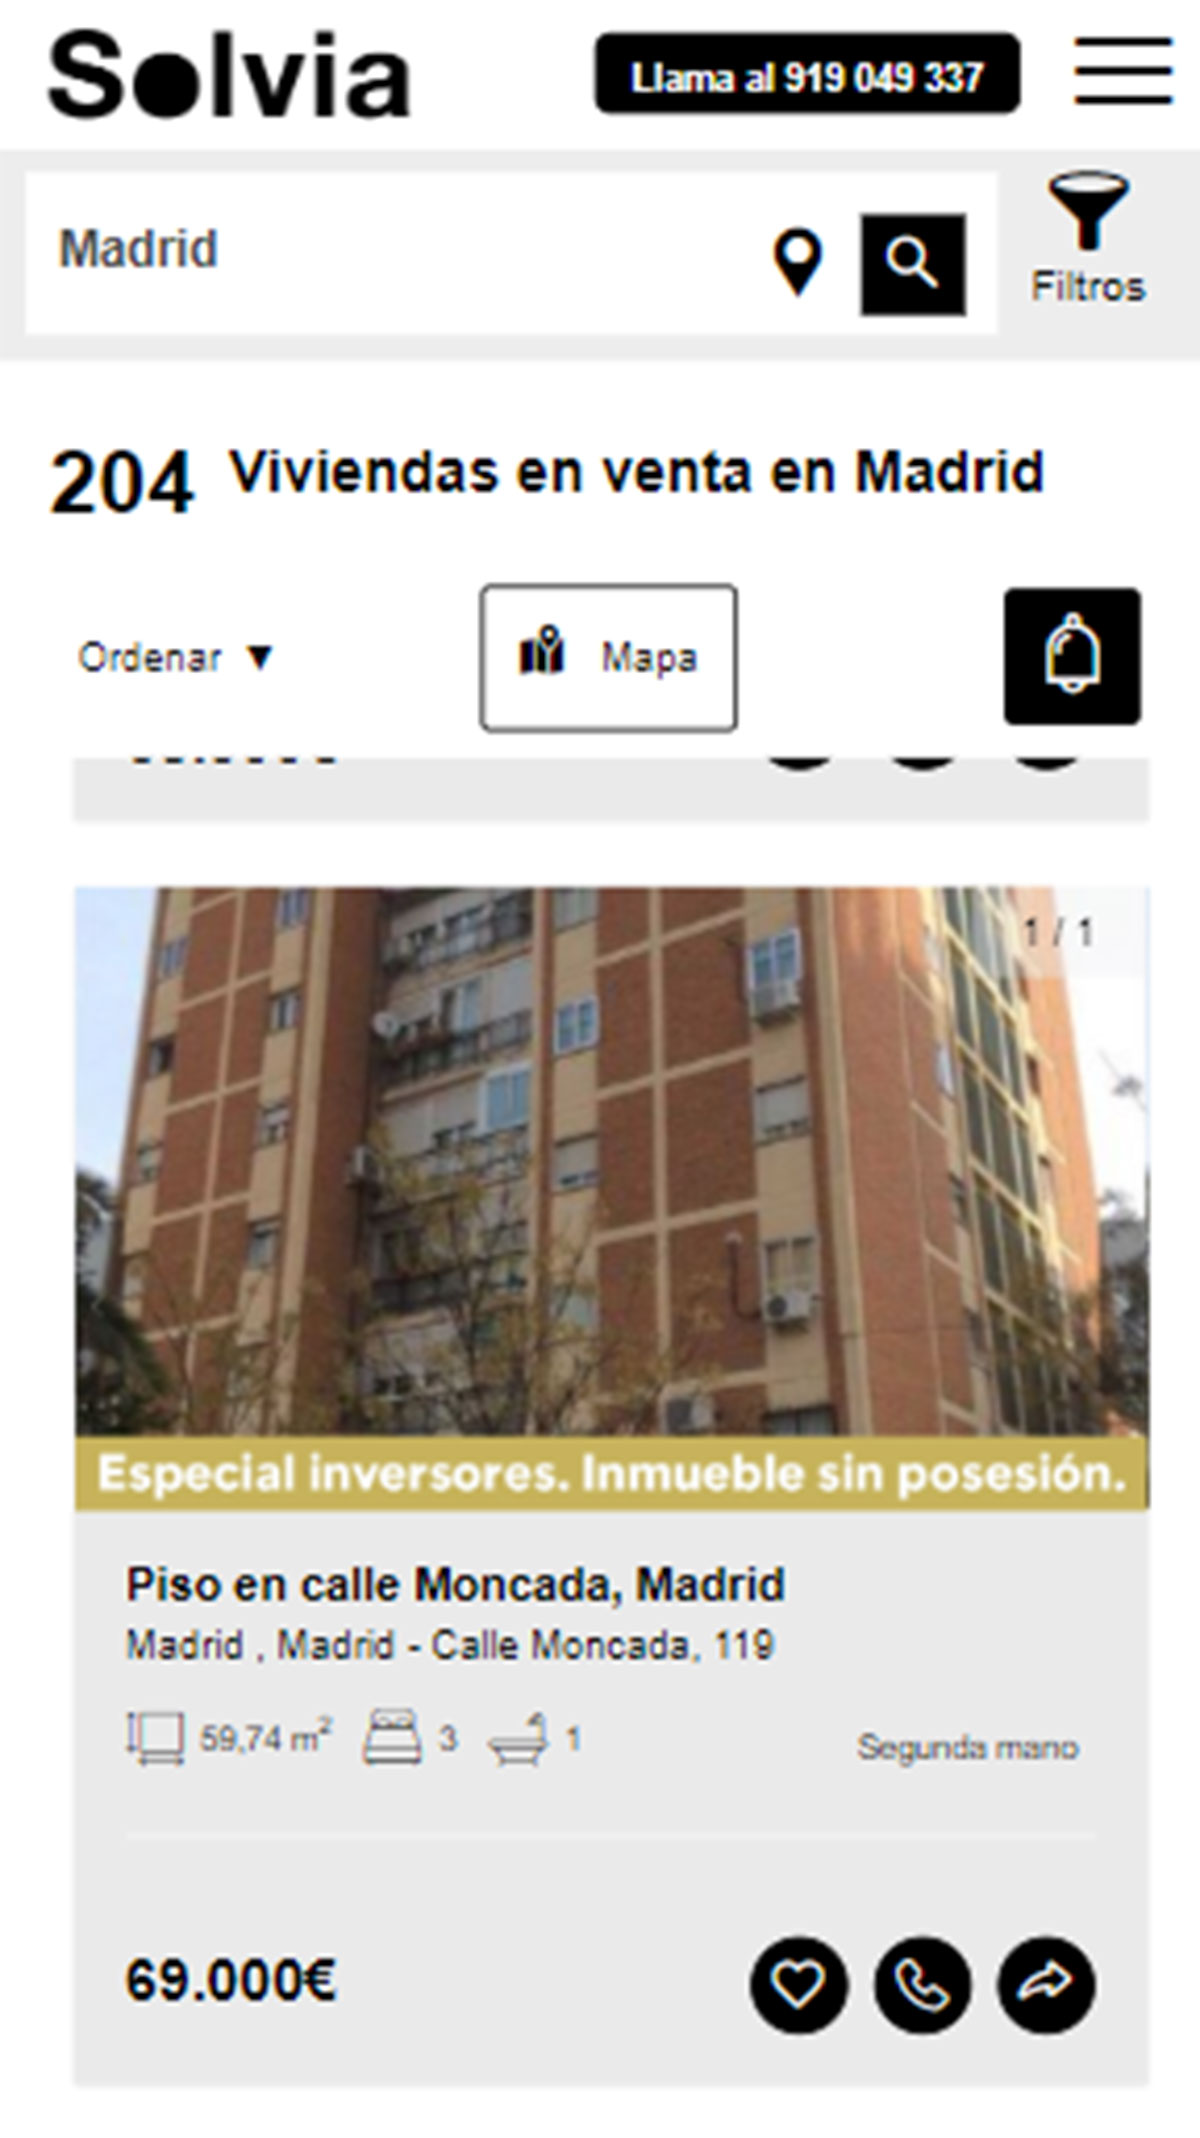 Piso en la ciudad de Madrid por 69.000 euros